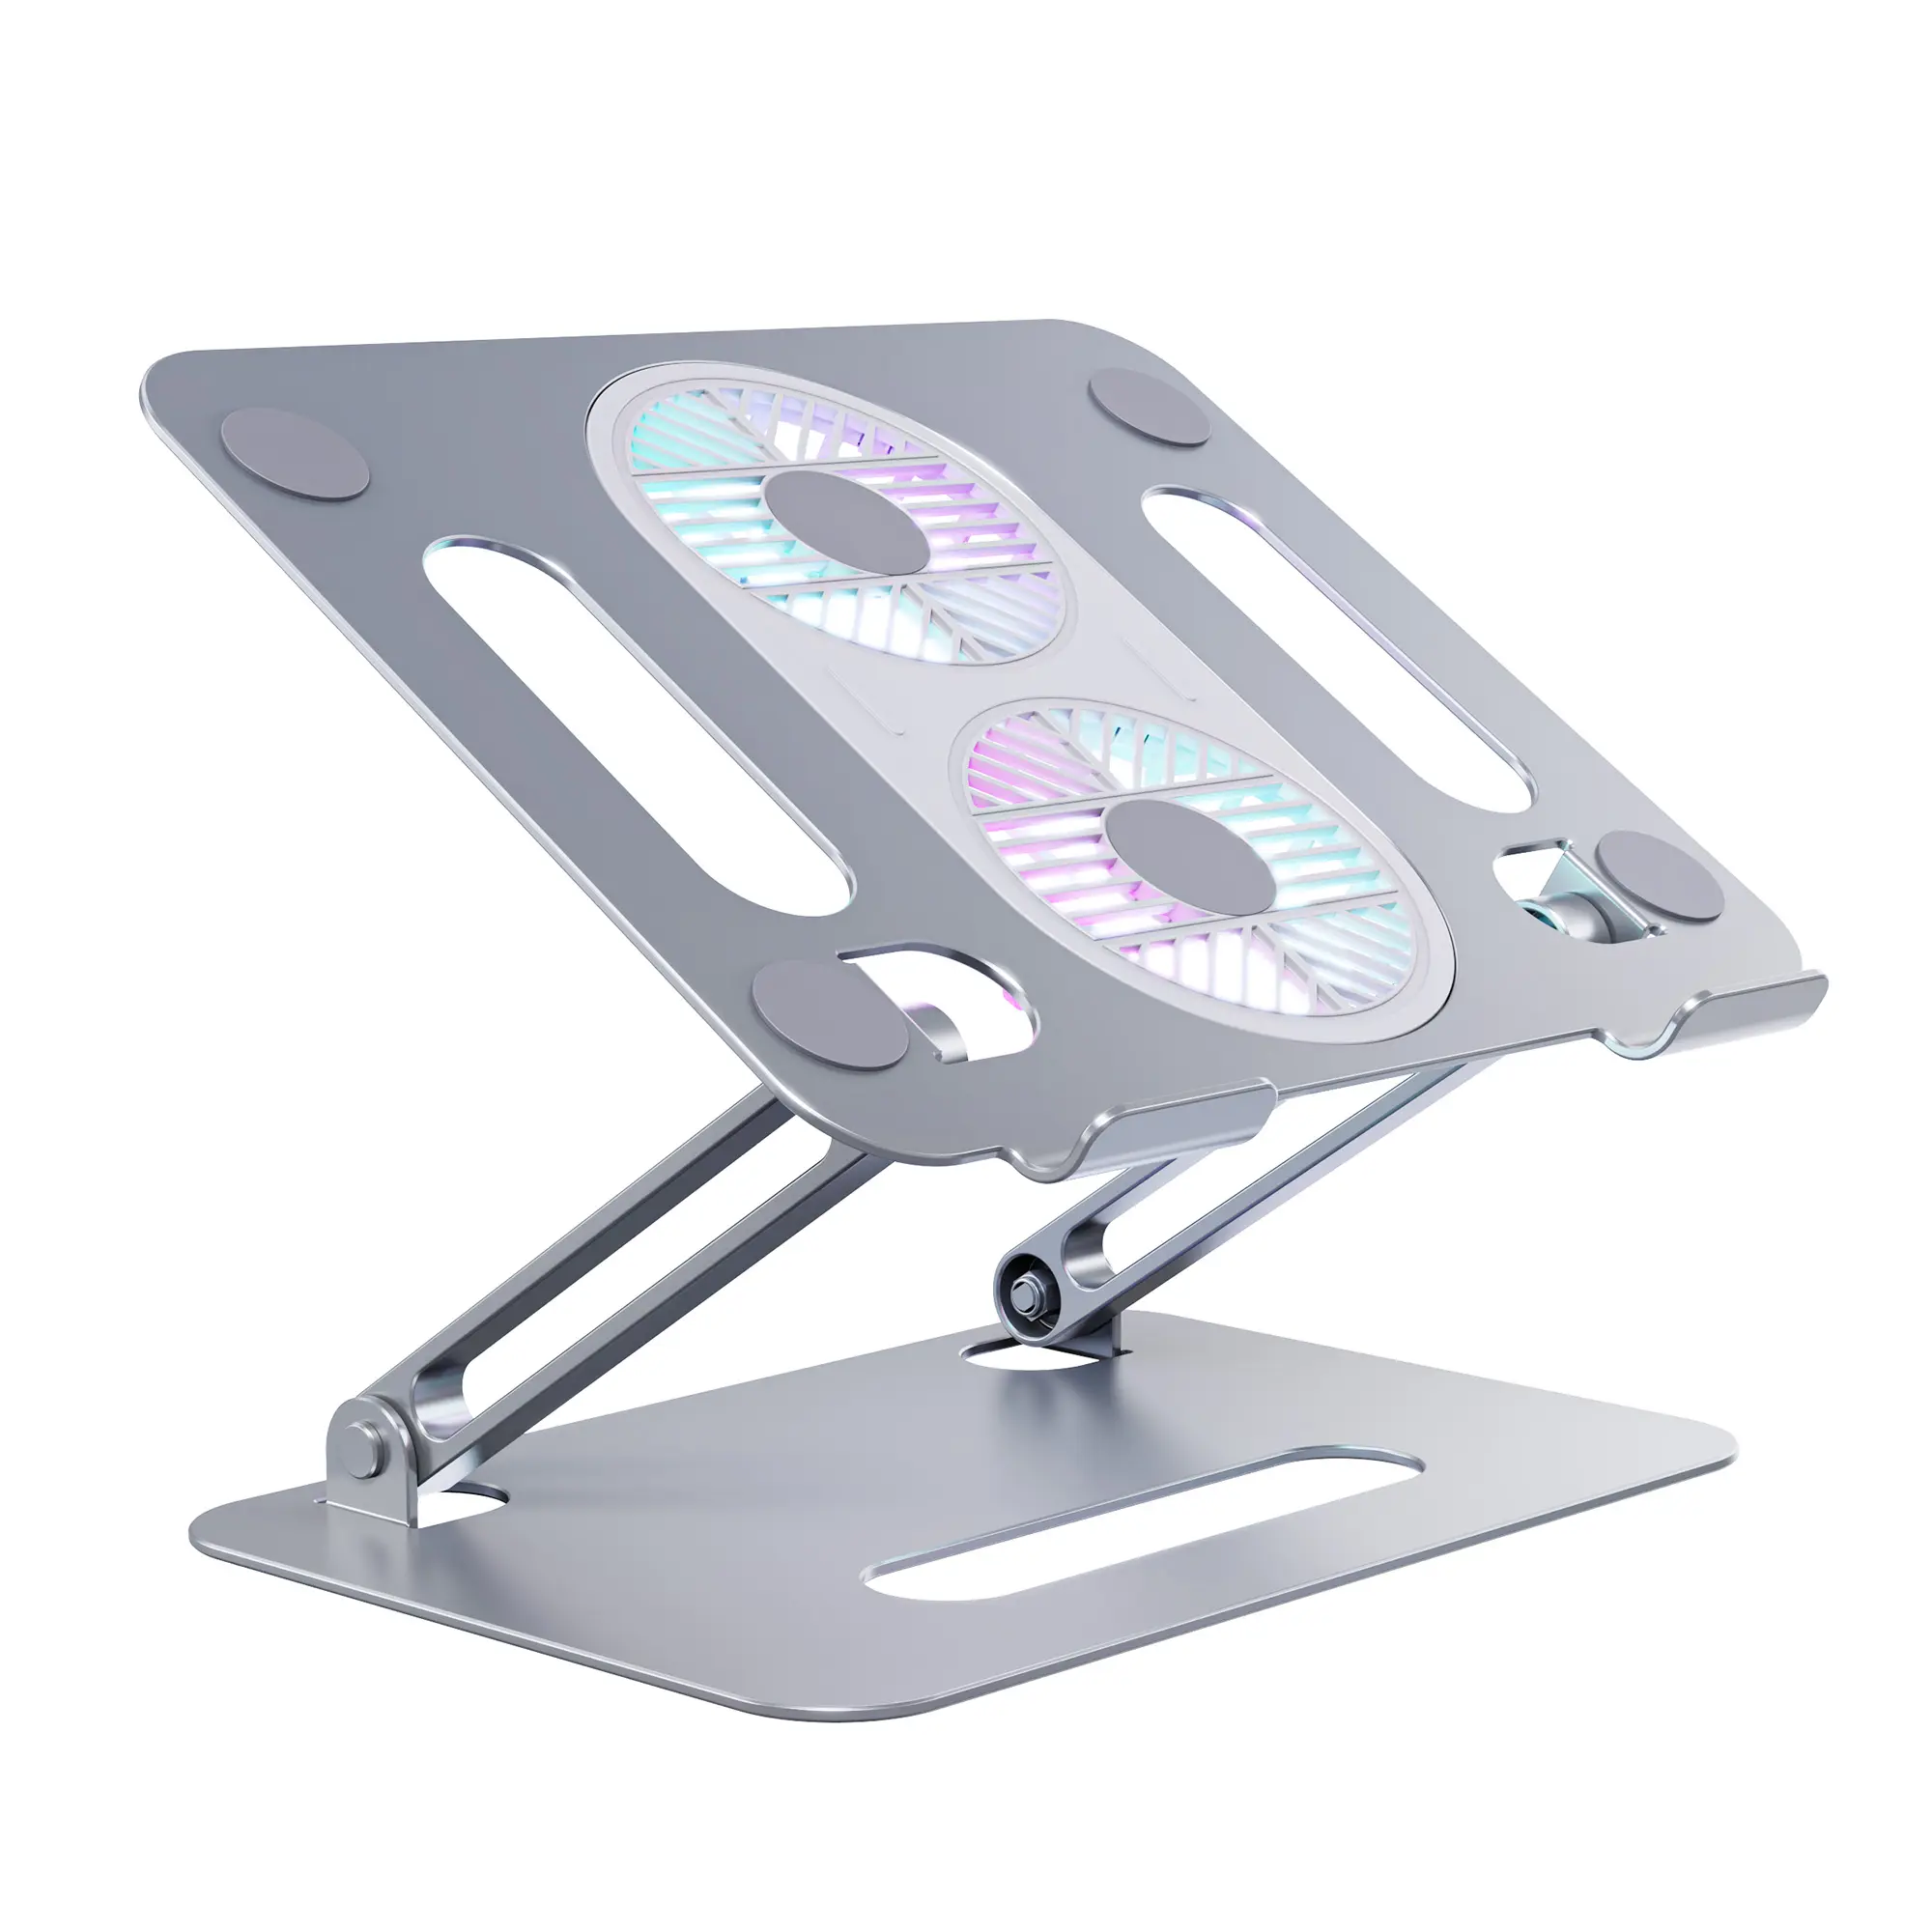 Sıcak satış ergonomik dizüstü bilgisayar ayaklık masası ayarlanabilir dizüstü standı katlanır masa Tablet standı alüminyum alaşımlı dizüstü soğutucusu